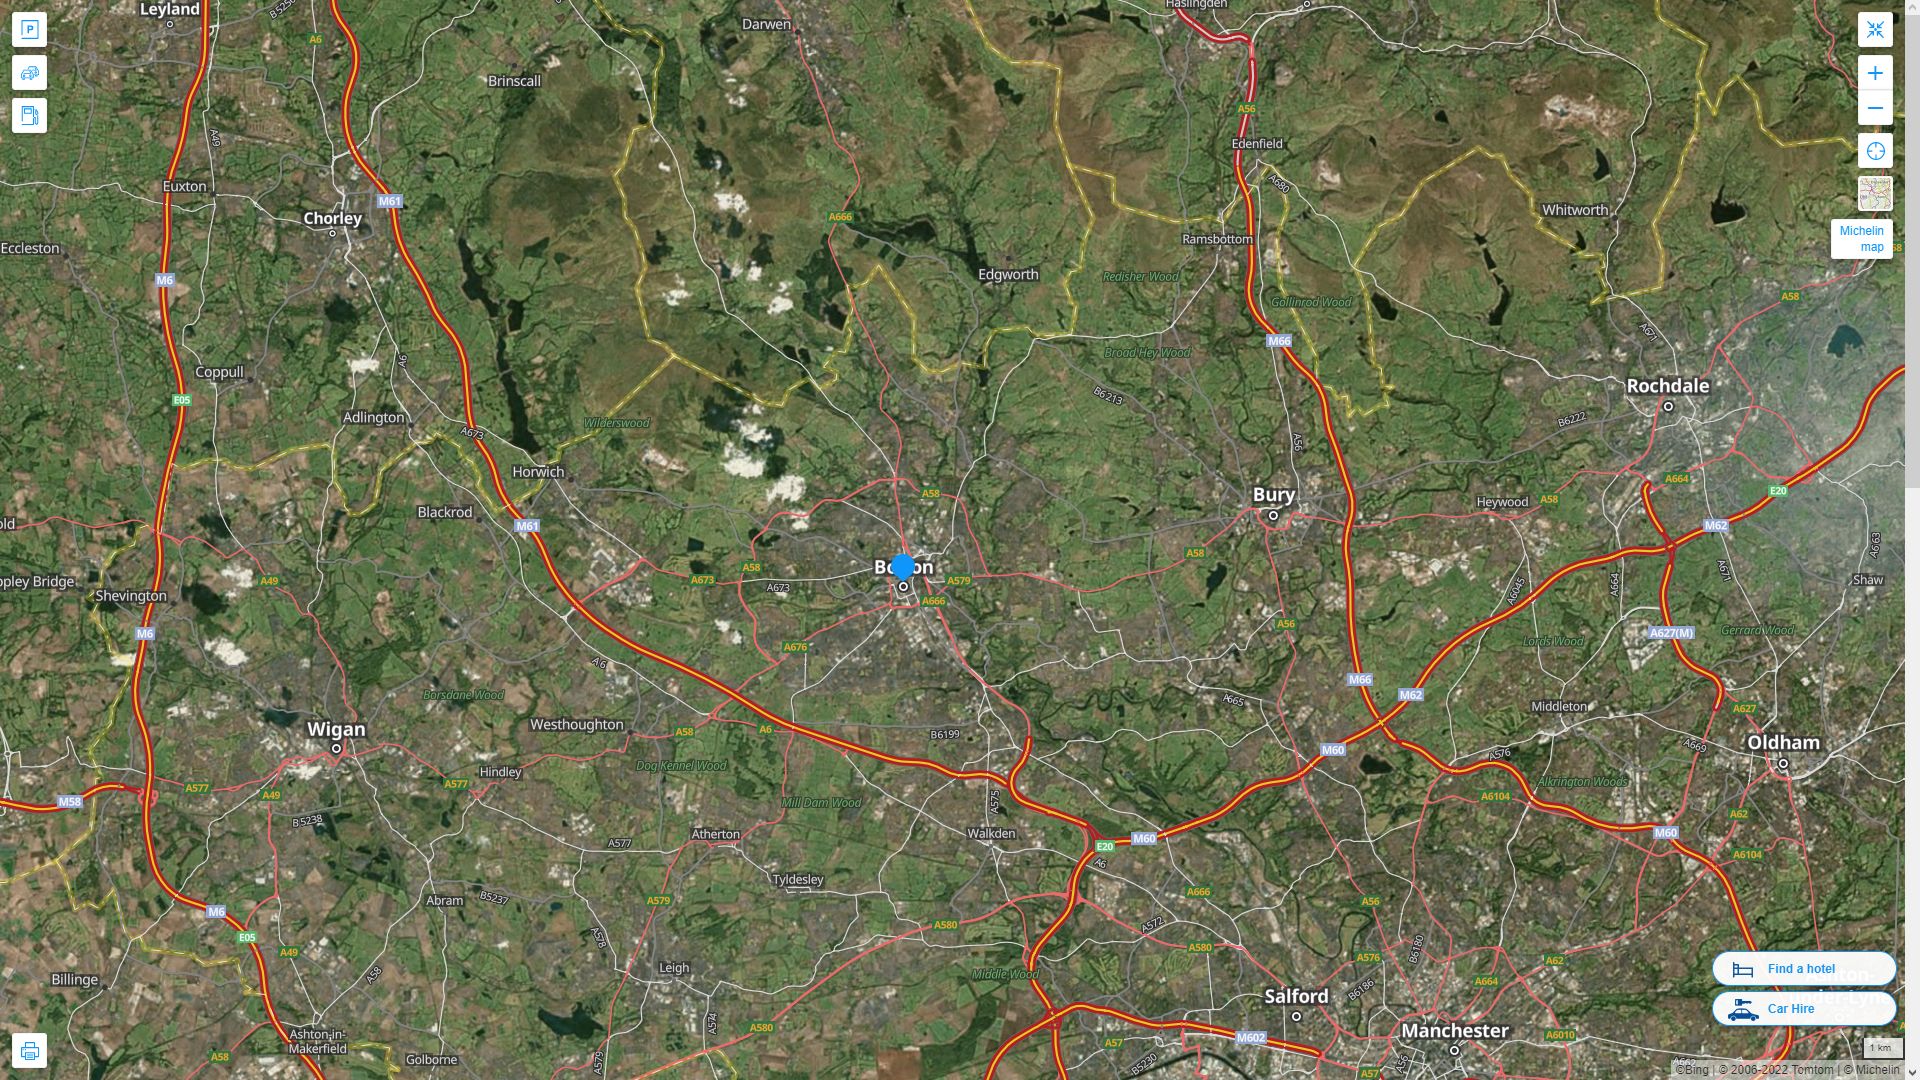 Bolton Royaume Uni Autoroute et carte routiere avec vue satellite